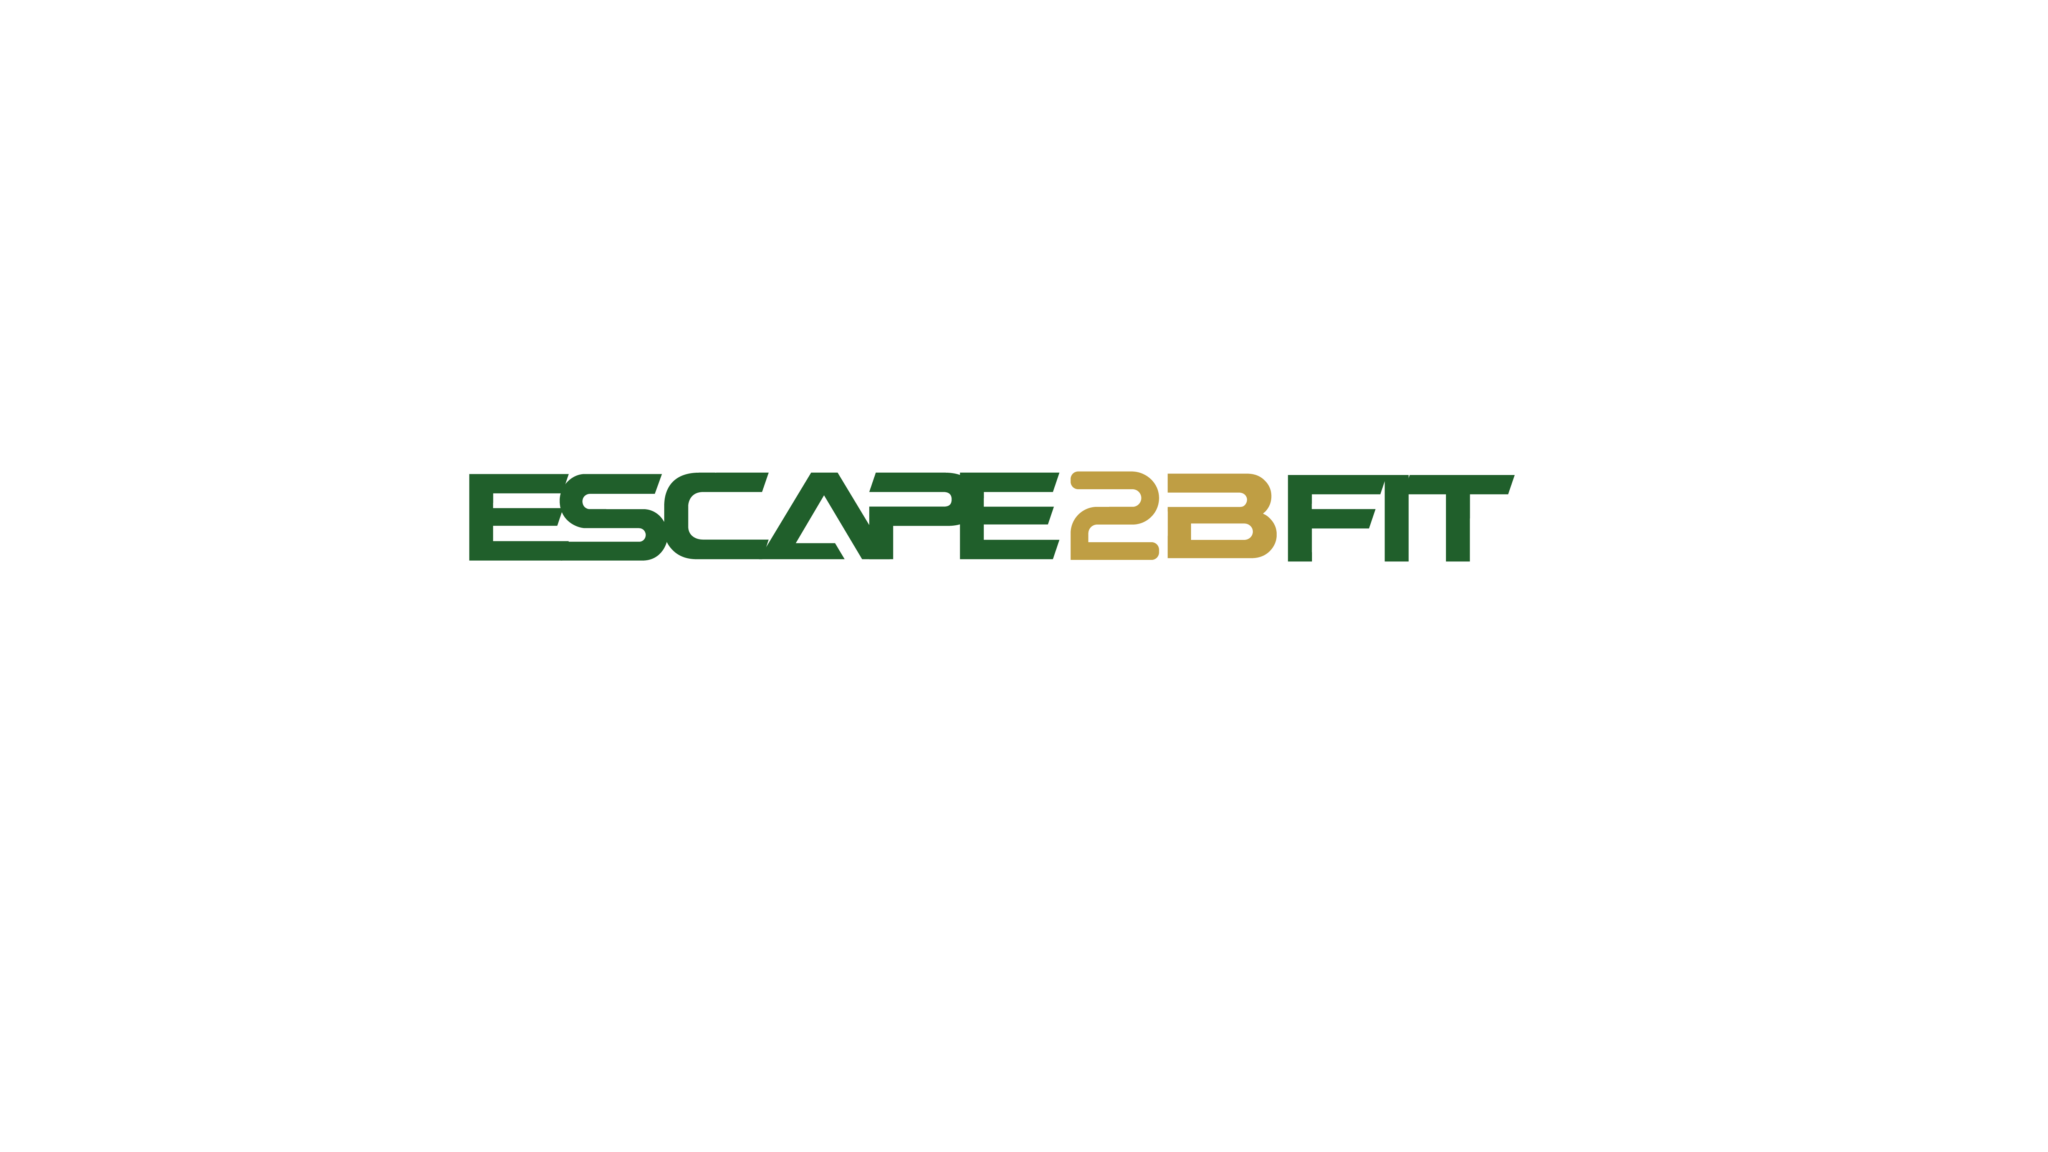 Escape2Bfit